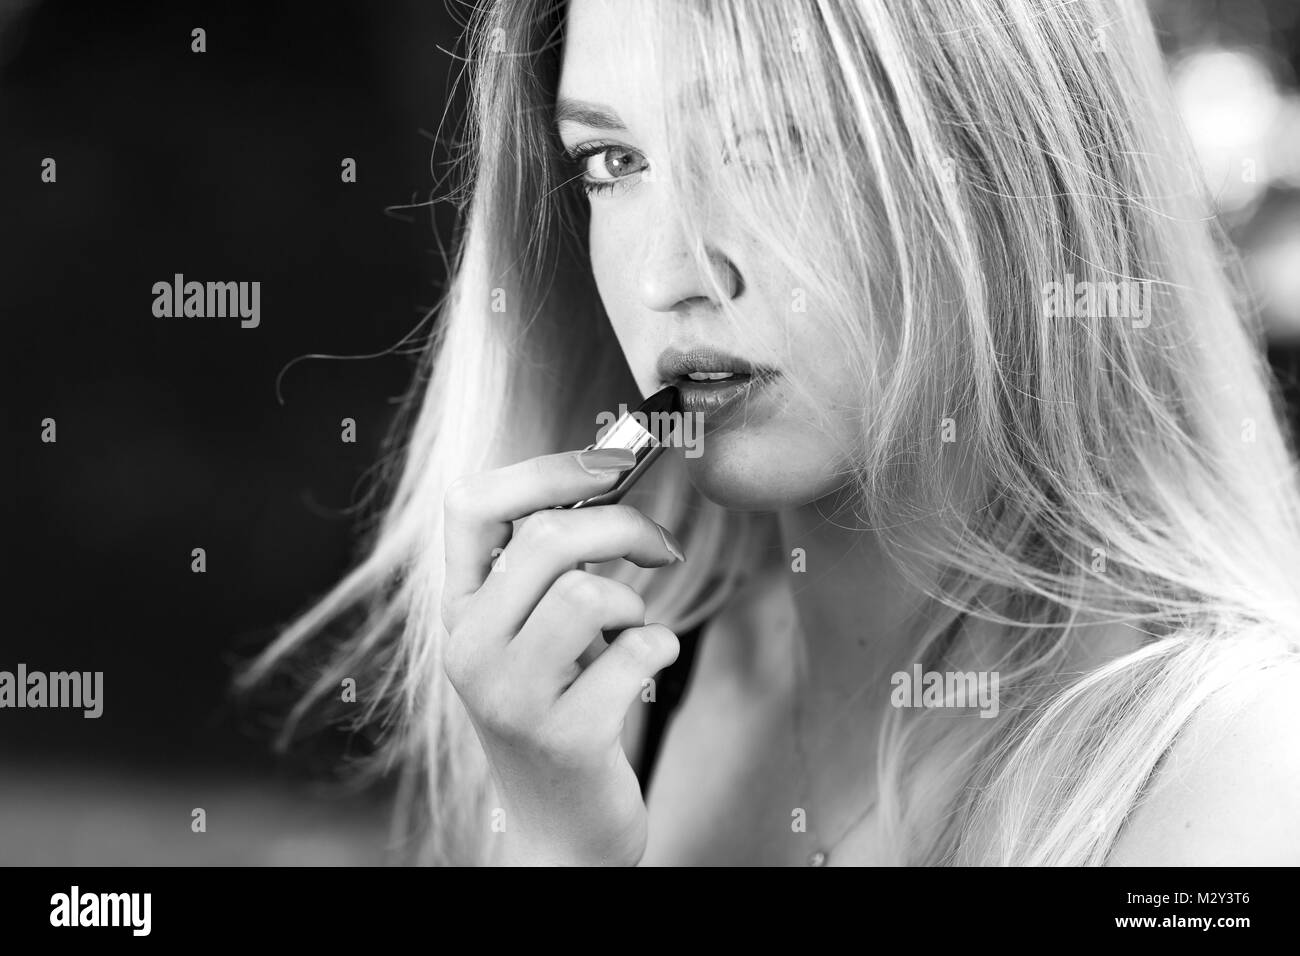 Schöne junge blonde Frau korrigiert - Anwendung der roten Lippenstift Make-up im Park. Konzept jugendlicher Lebensstil. Stockfoto